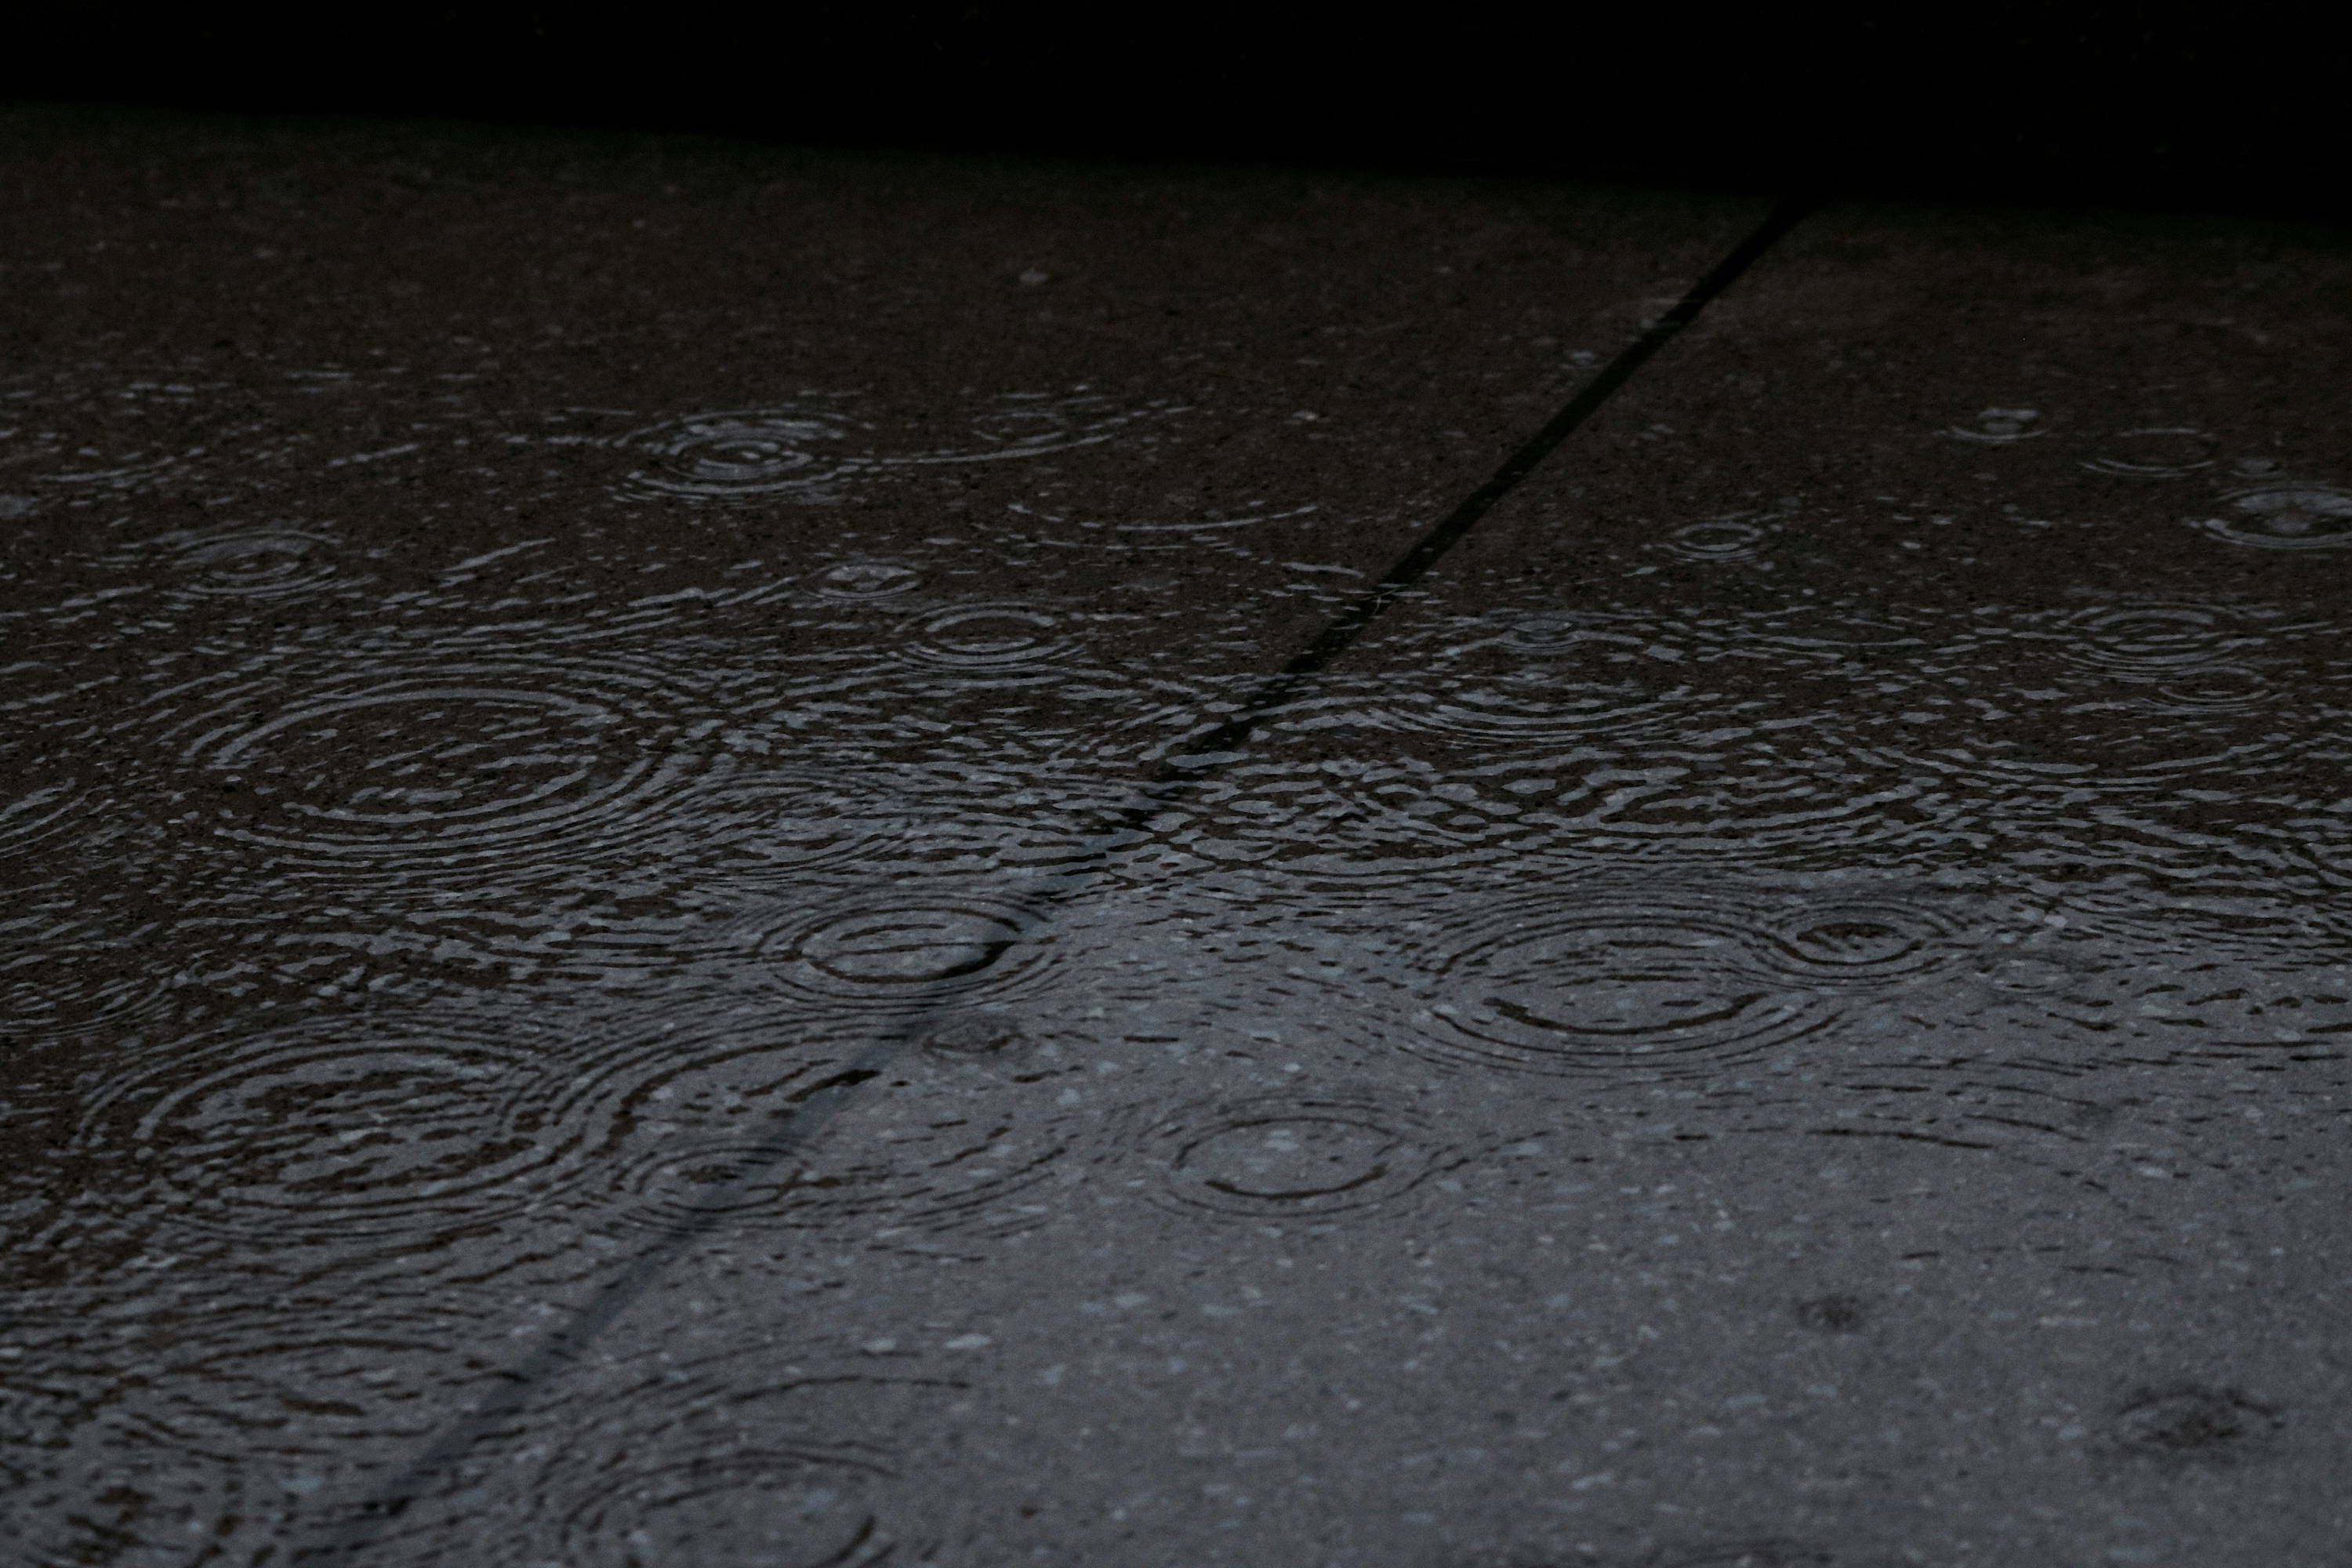 Rain falling on the pavement